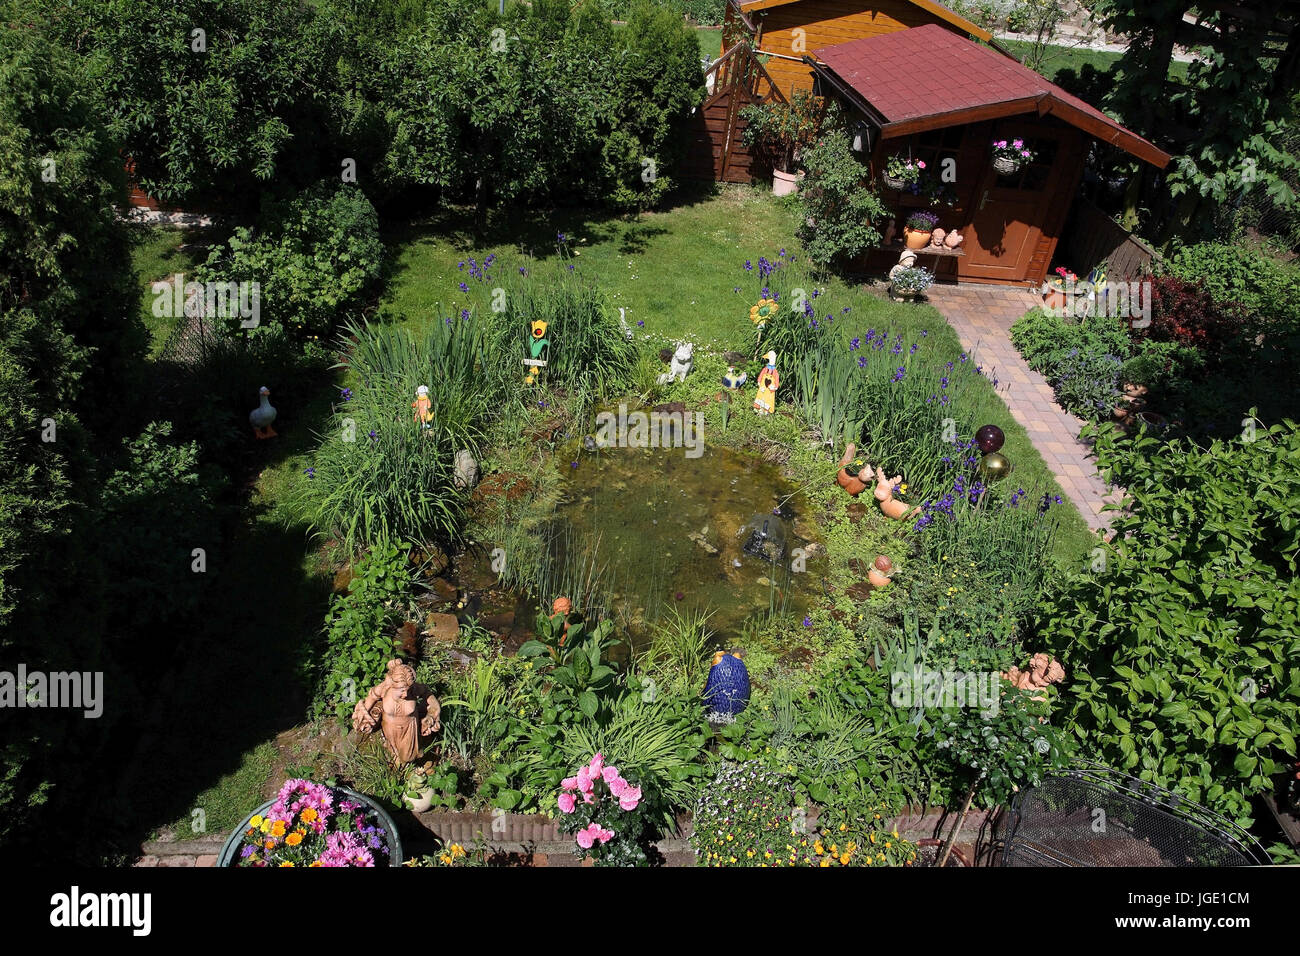 Garden with pond and summer house, Garten mit Teich und Gartenhaus Stock Photo